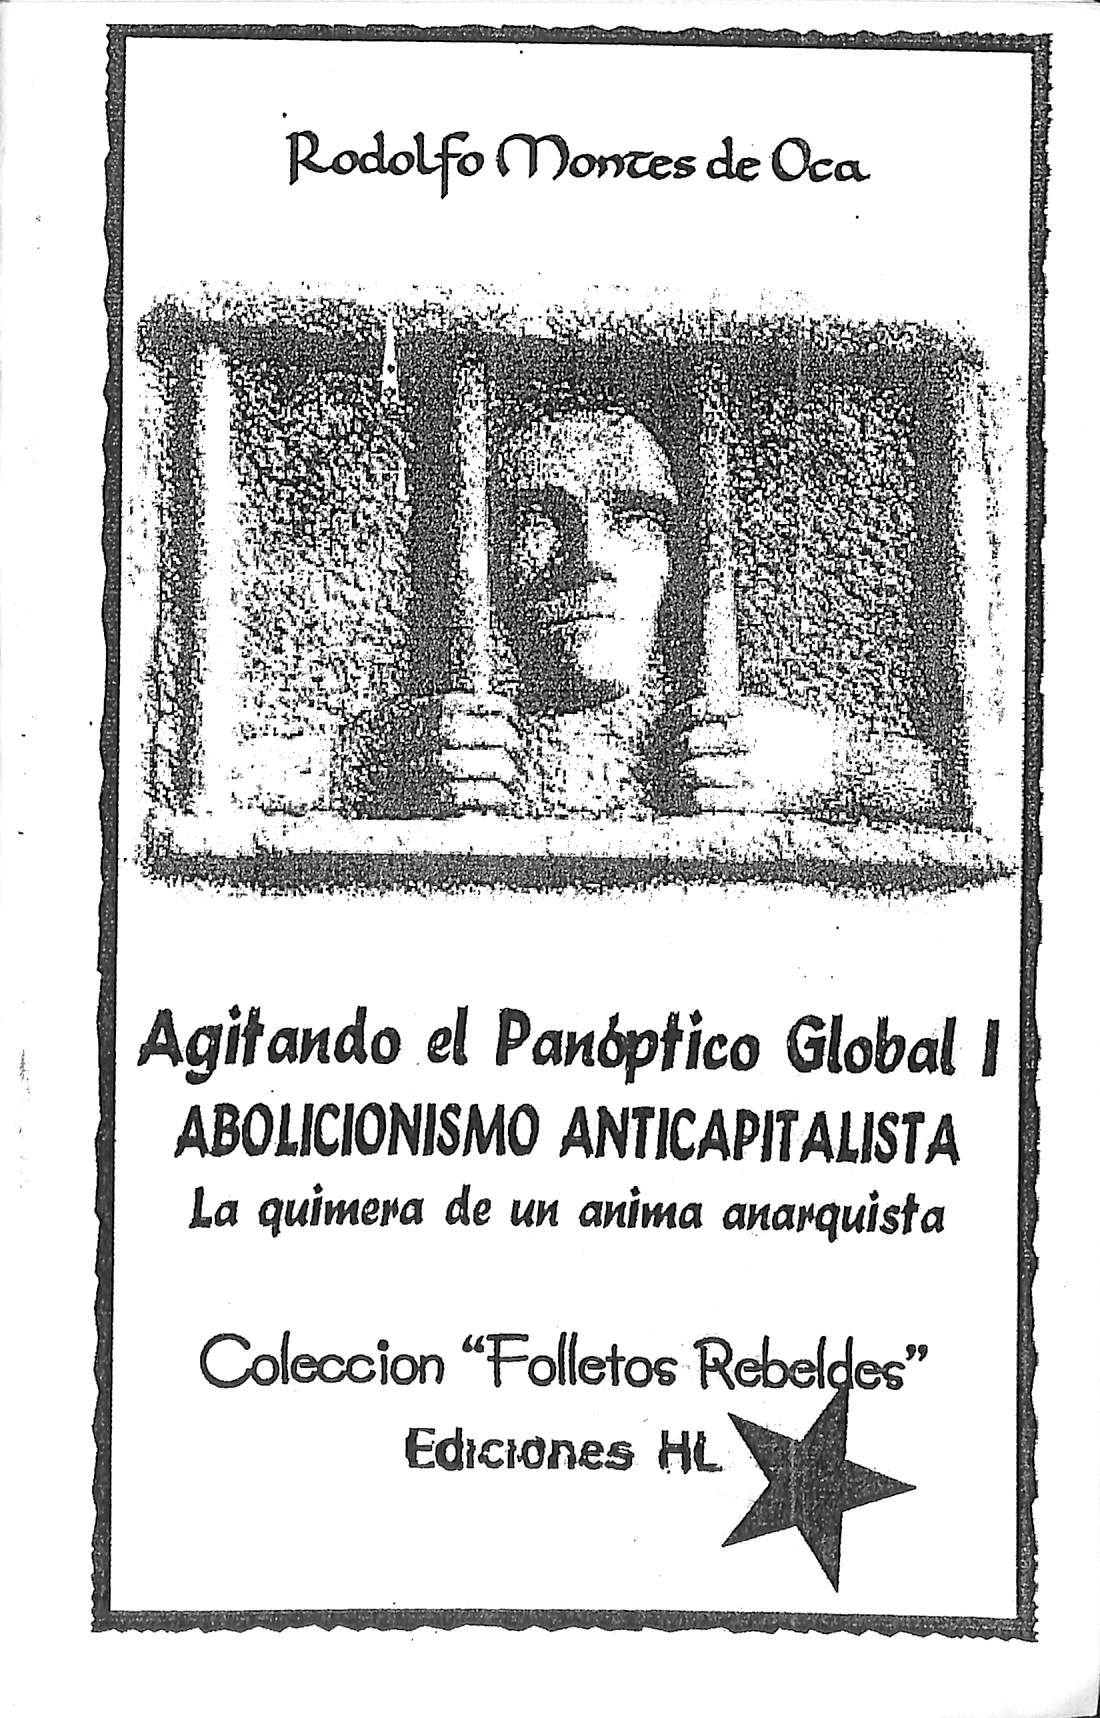 Agitando el Panóptico Global I - Colección “Folletos Rebeldes”